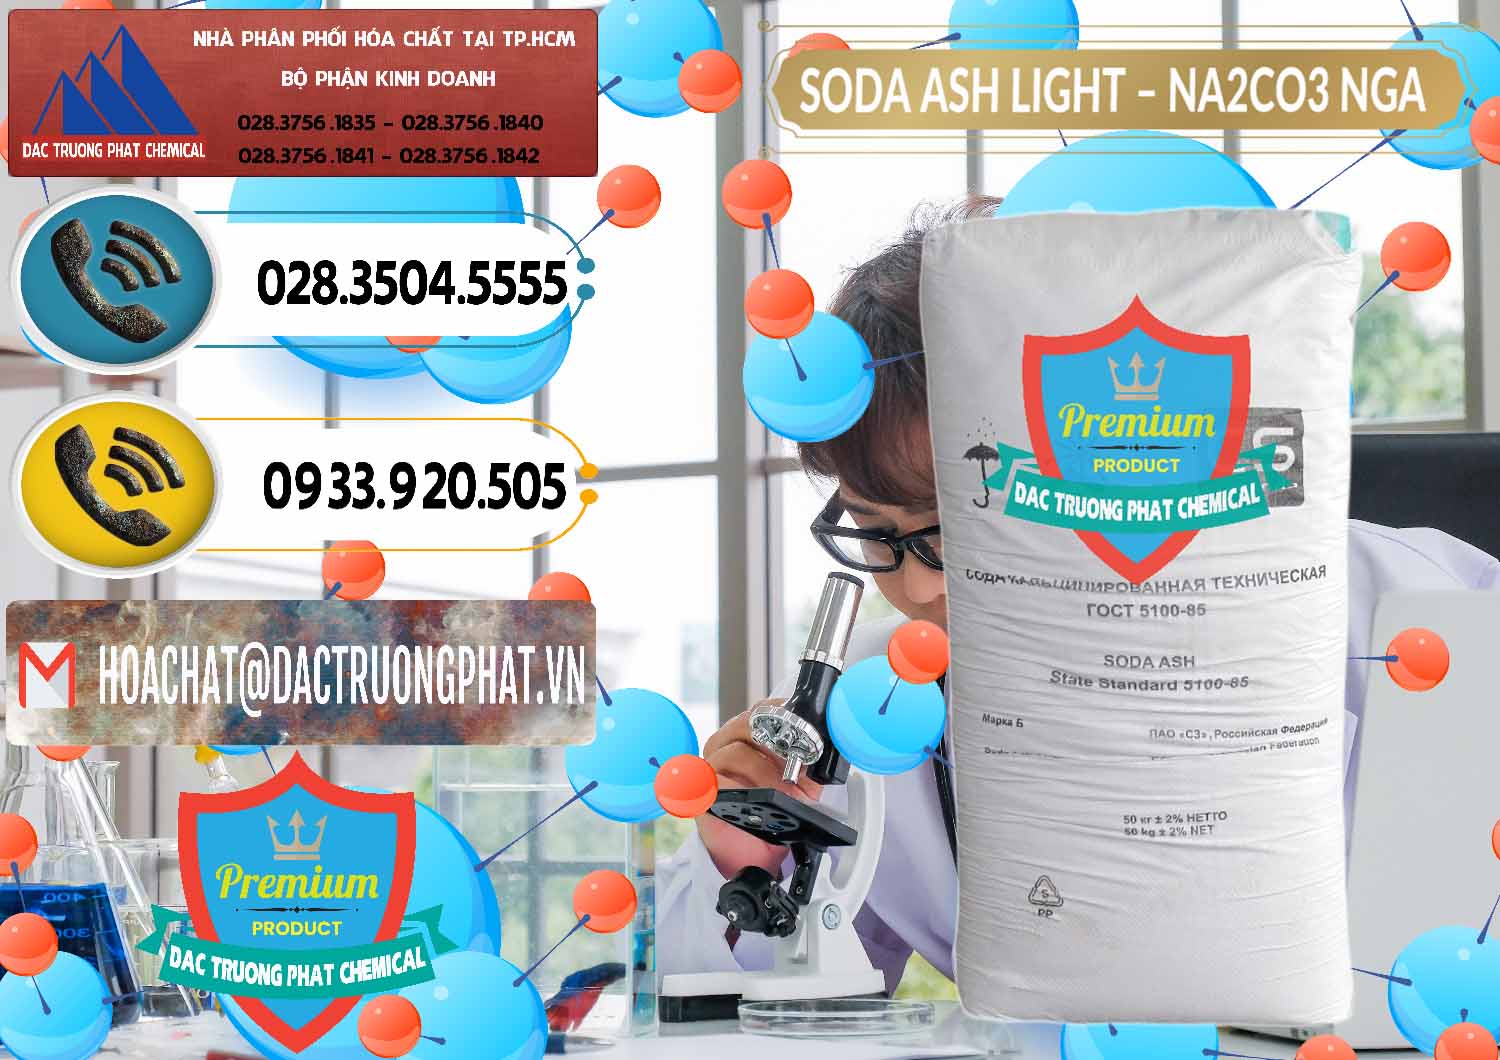 Công ty bán & cung cấp Soda Ash Light - NA2CO3 Nga Russia - 0128 - Công ty phân phối - cung cấp hóa chất tại TP.HCM - hoachatdetnhuom.vn